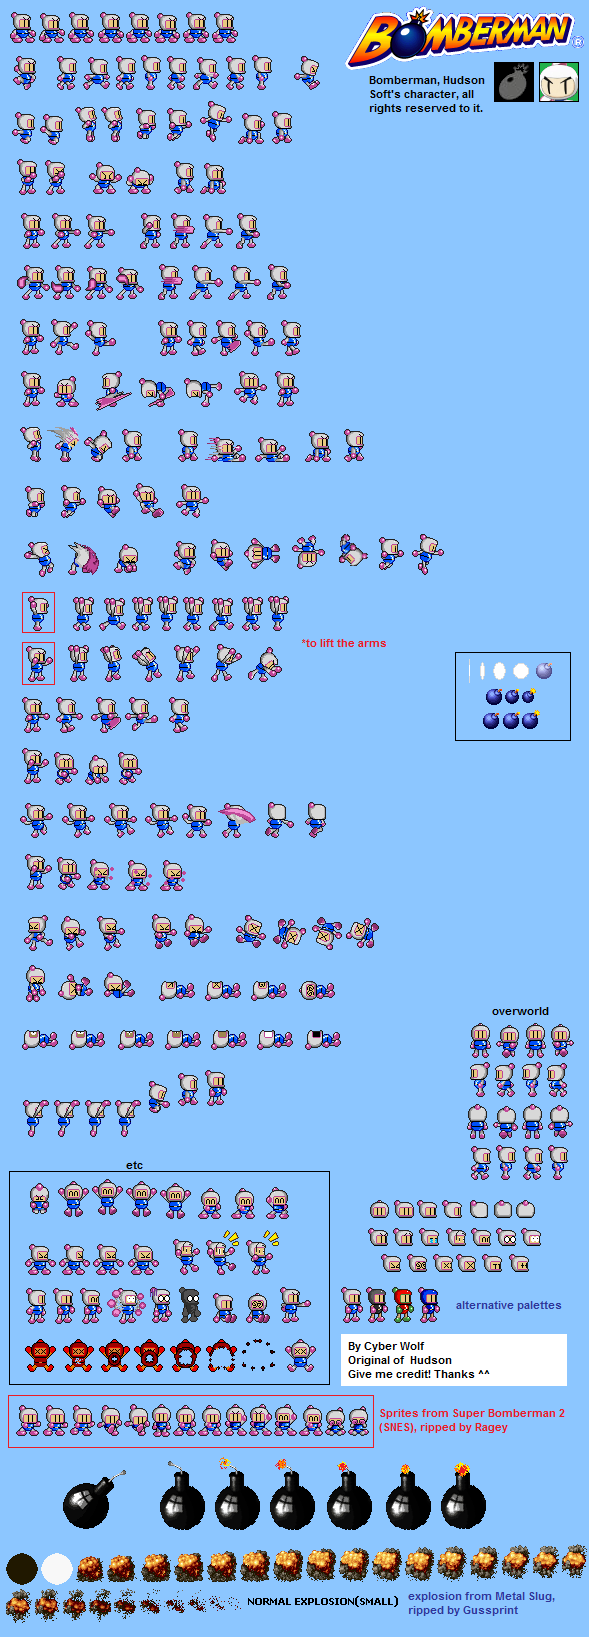 Bomberman Customs - Bomberman (Super Bomberman 2-Style)